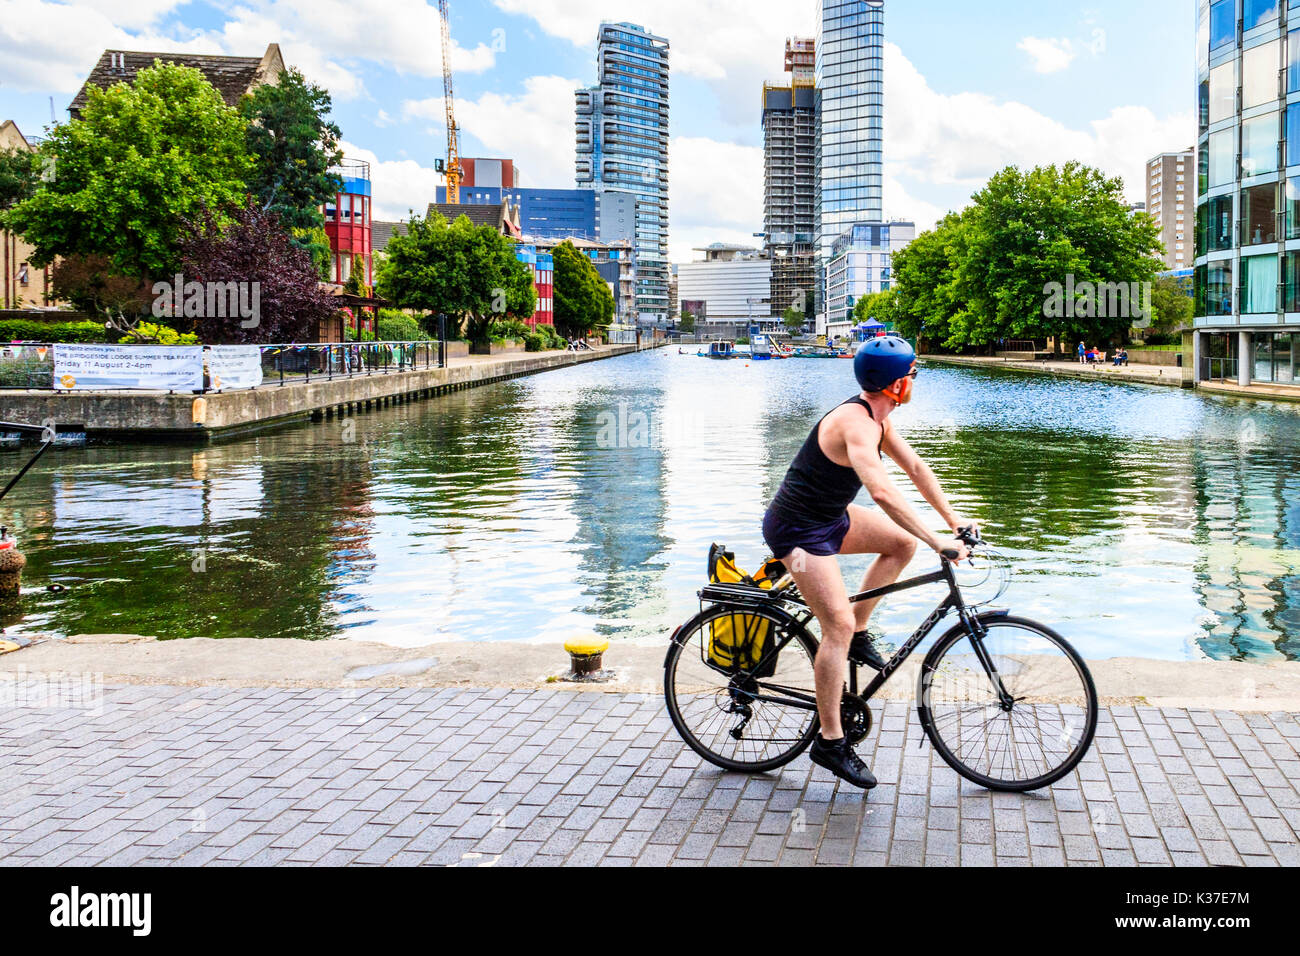 Un ciclista in shorts, gilet e casco che cavalcano una bicicletta sull'alzaia del canale di Regent a City Road Basin, Islington, Londra, UK, in una calda giornata estiva Foto Stock